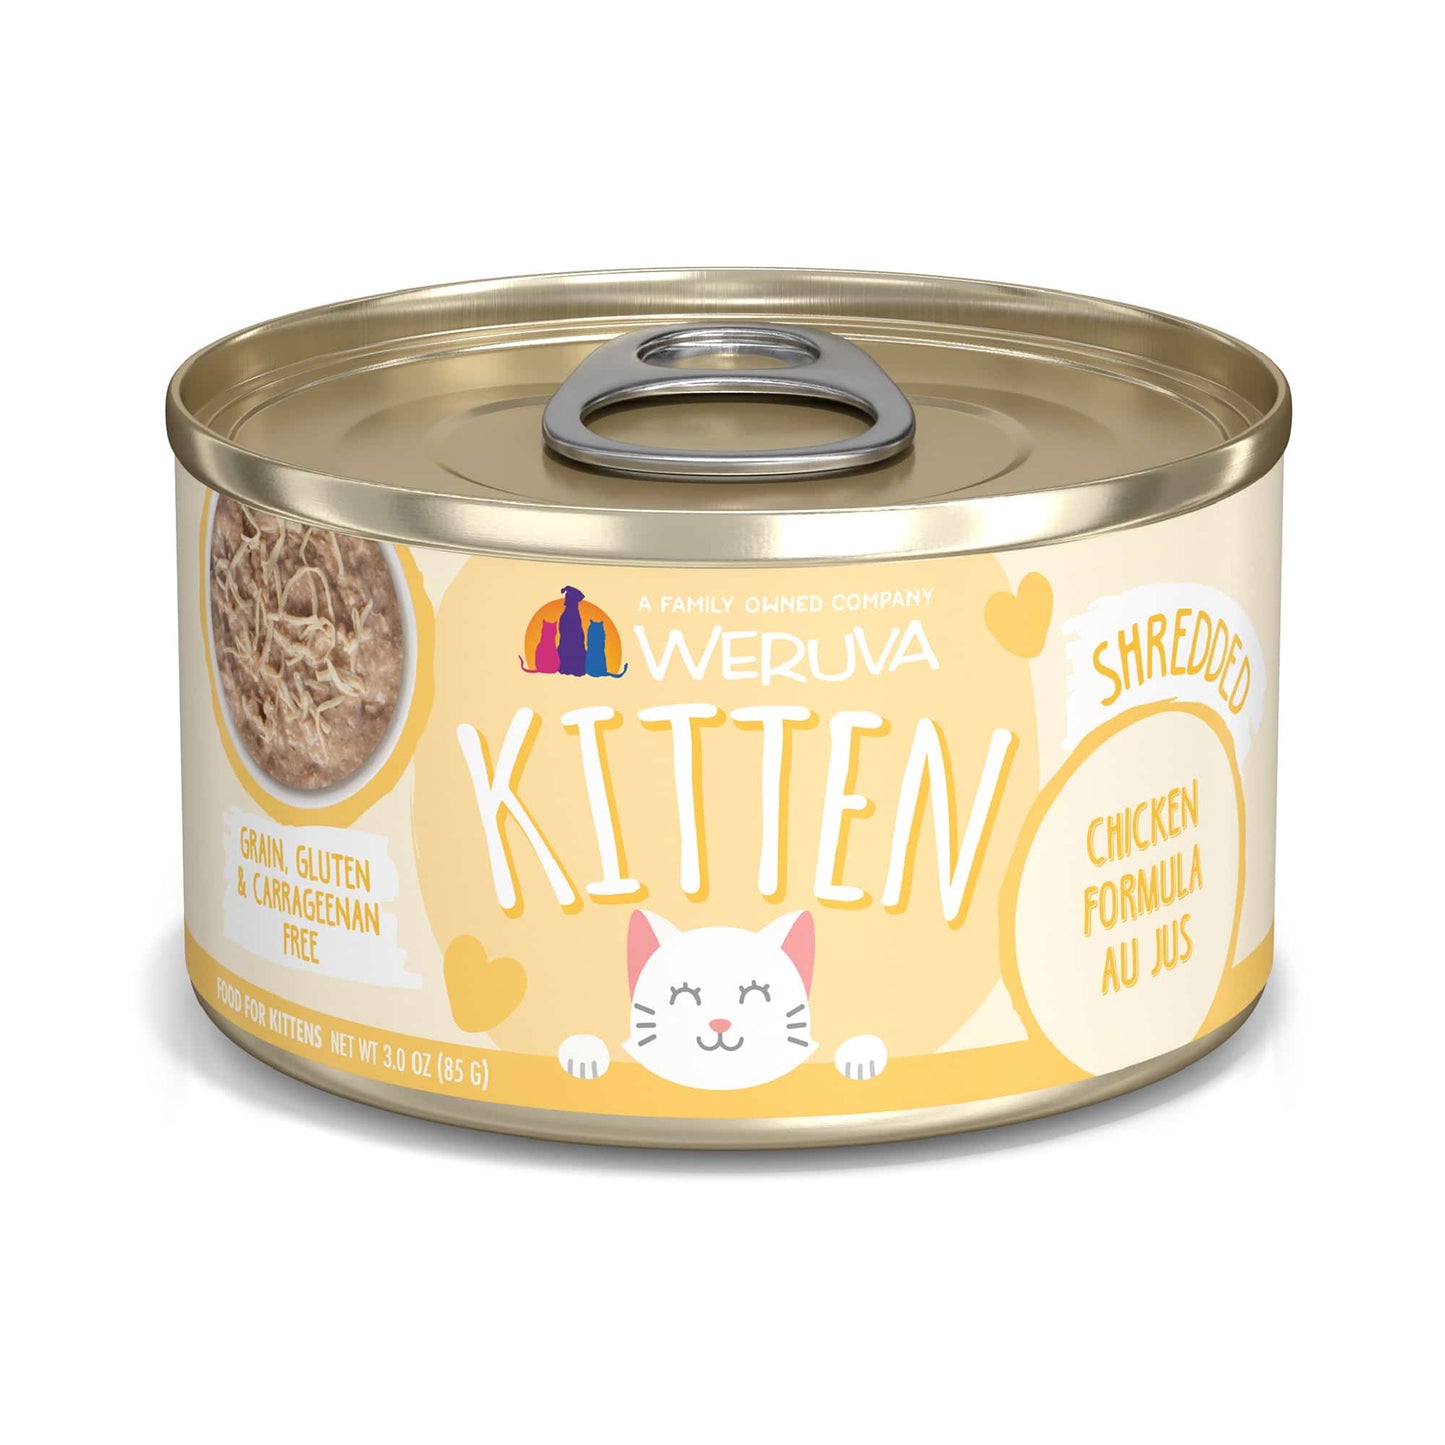 Weruva Kitten Chicken Formula Au Jus, Wet Cat Food, 3-oz Case of 12